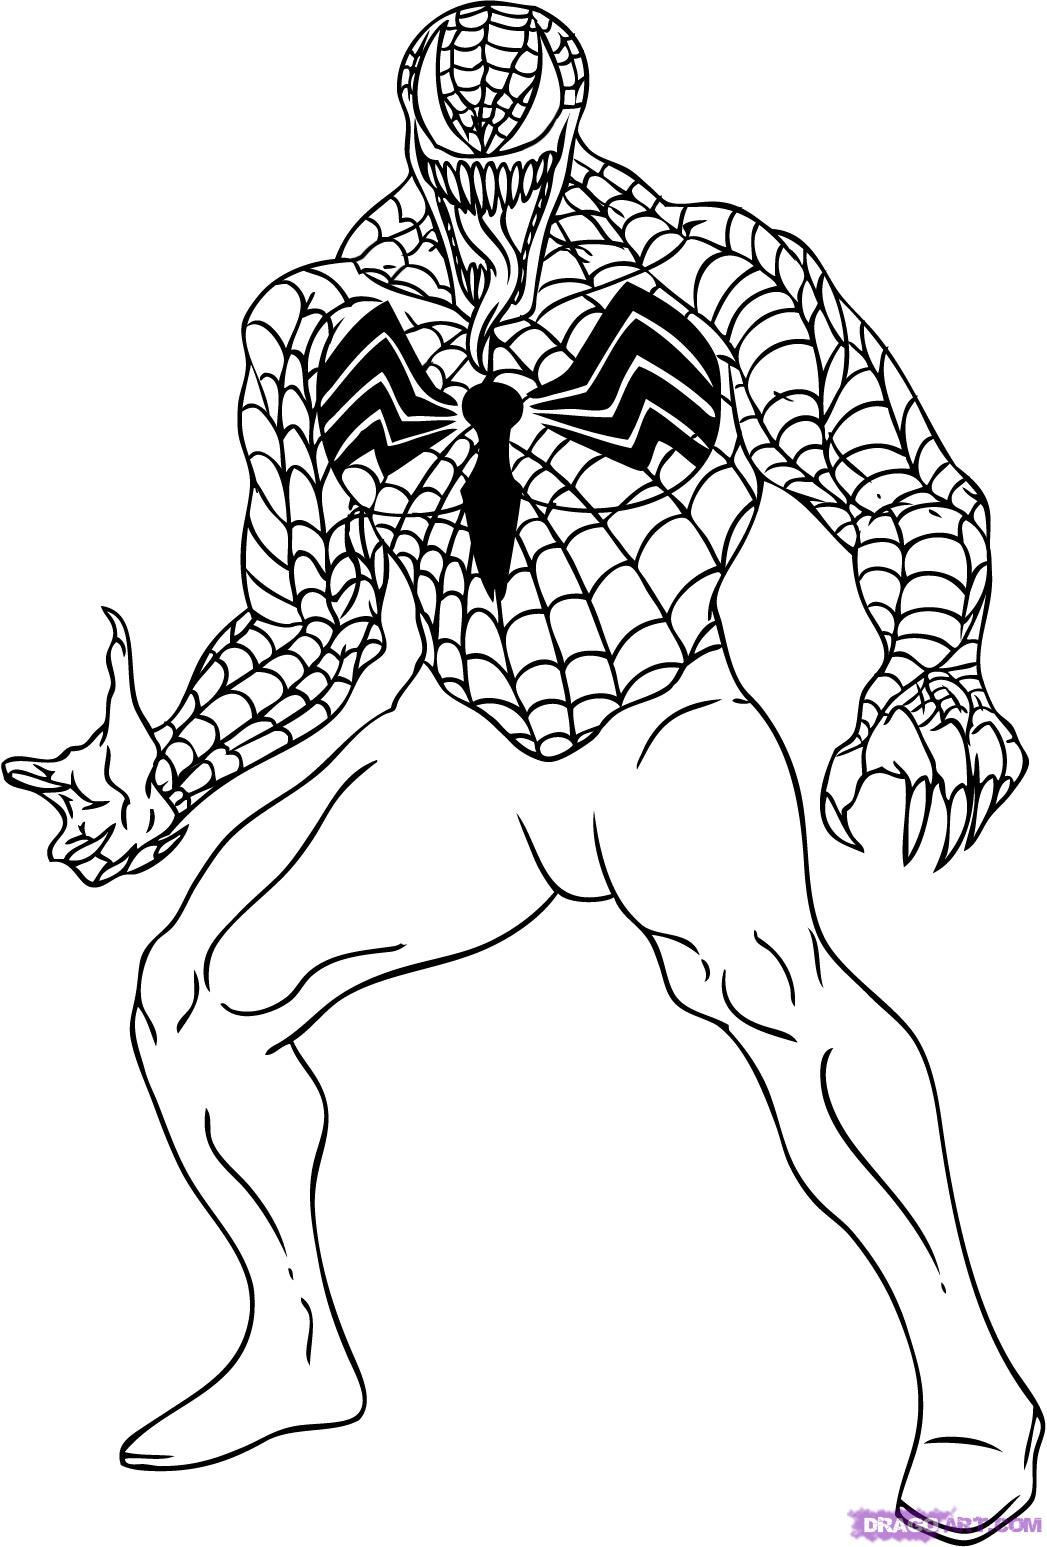 Venom Ausmalbilder
 Spiderman Coloring Pages Venom 4 6881 in Malvorlage